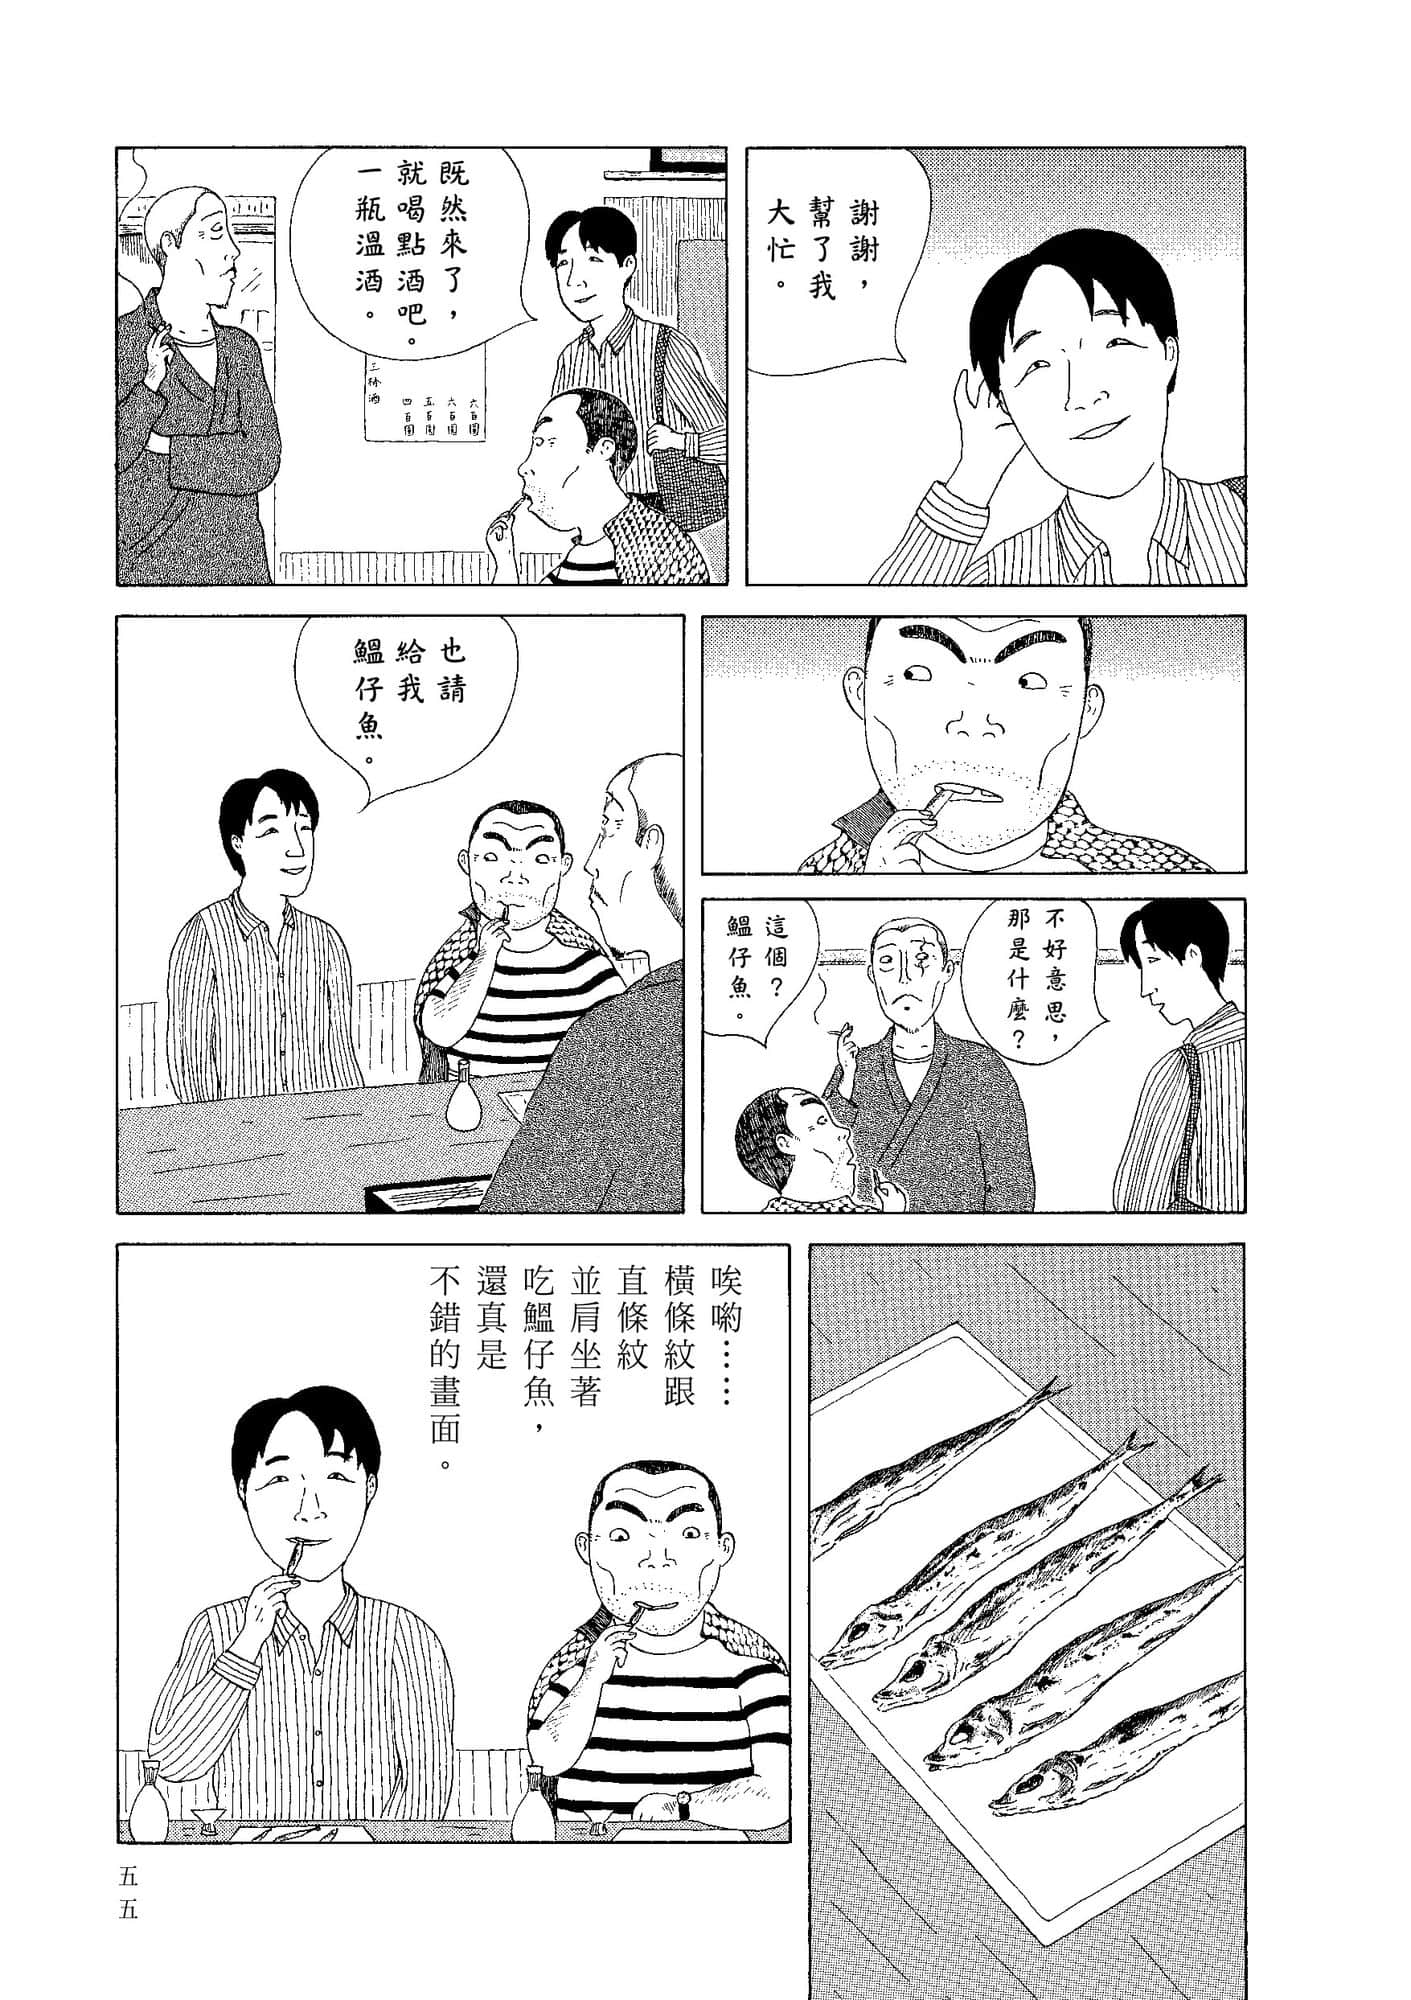 深夜食堂【1-28卷 第28卷是生肉】【Shinya Shokudou】-2